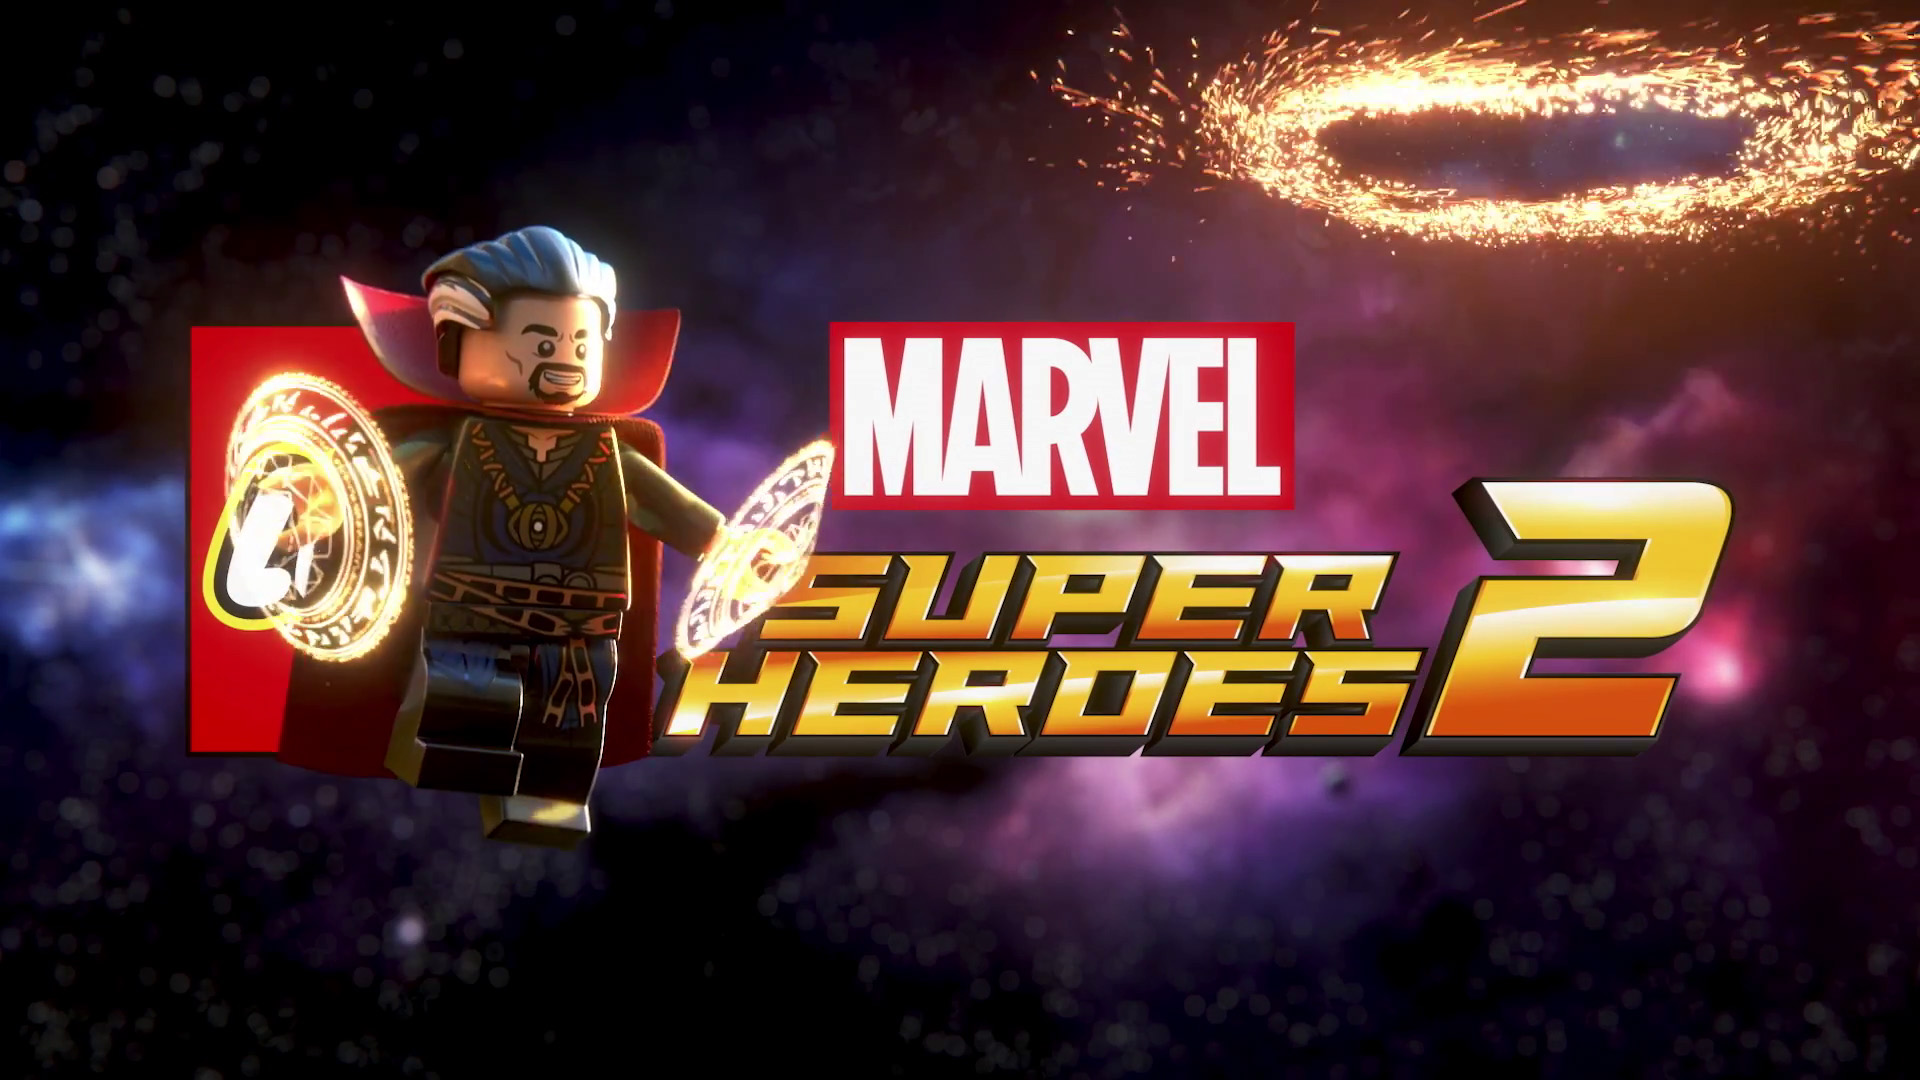 Lego Marvel Super Heroes 2 'inhumans' Trailer - Lego Marvel Superheroes 2 Dormammu , HD Wallpaper & Backgrounds